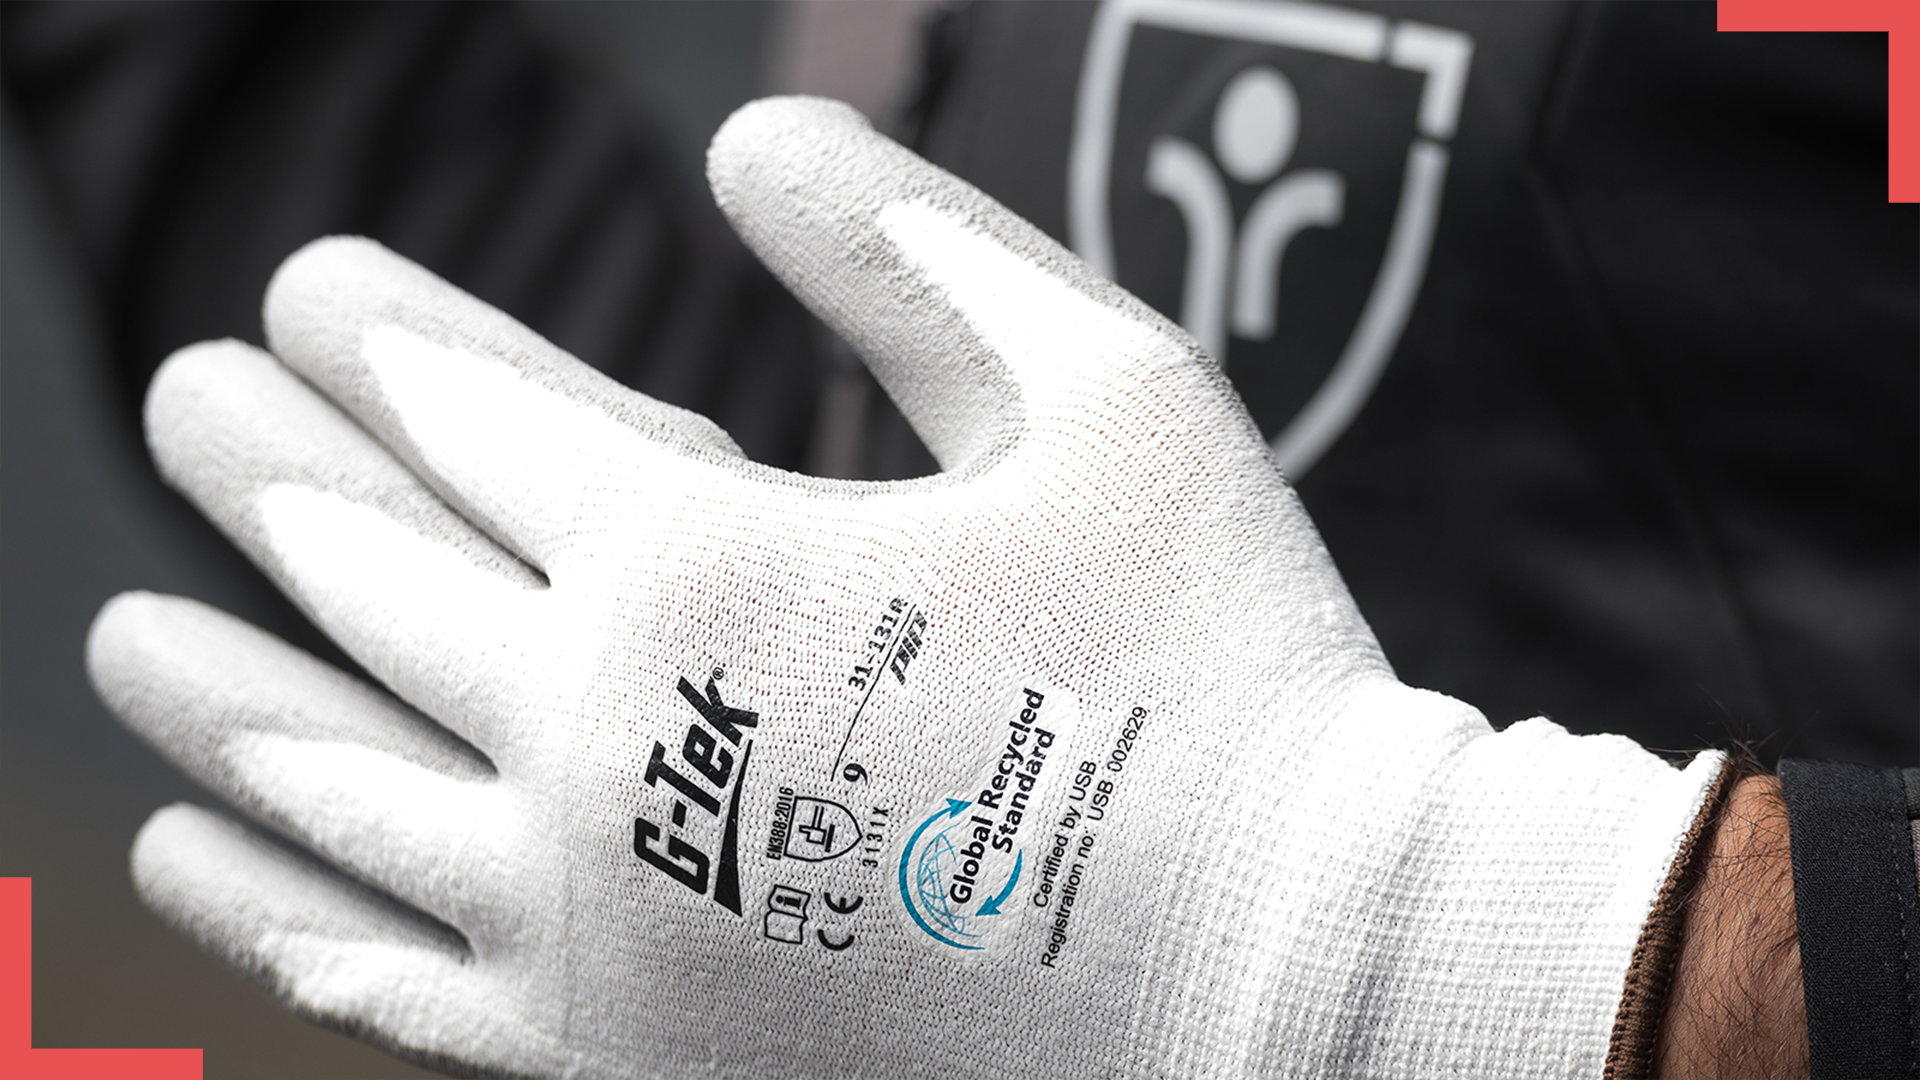 EPI responsables : G-Tek 3RX, une gamme complète de gants fabriquée en bouteilles plastiques recyclées